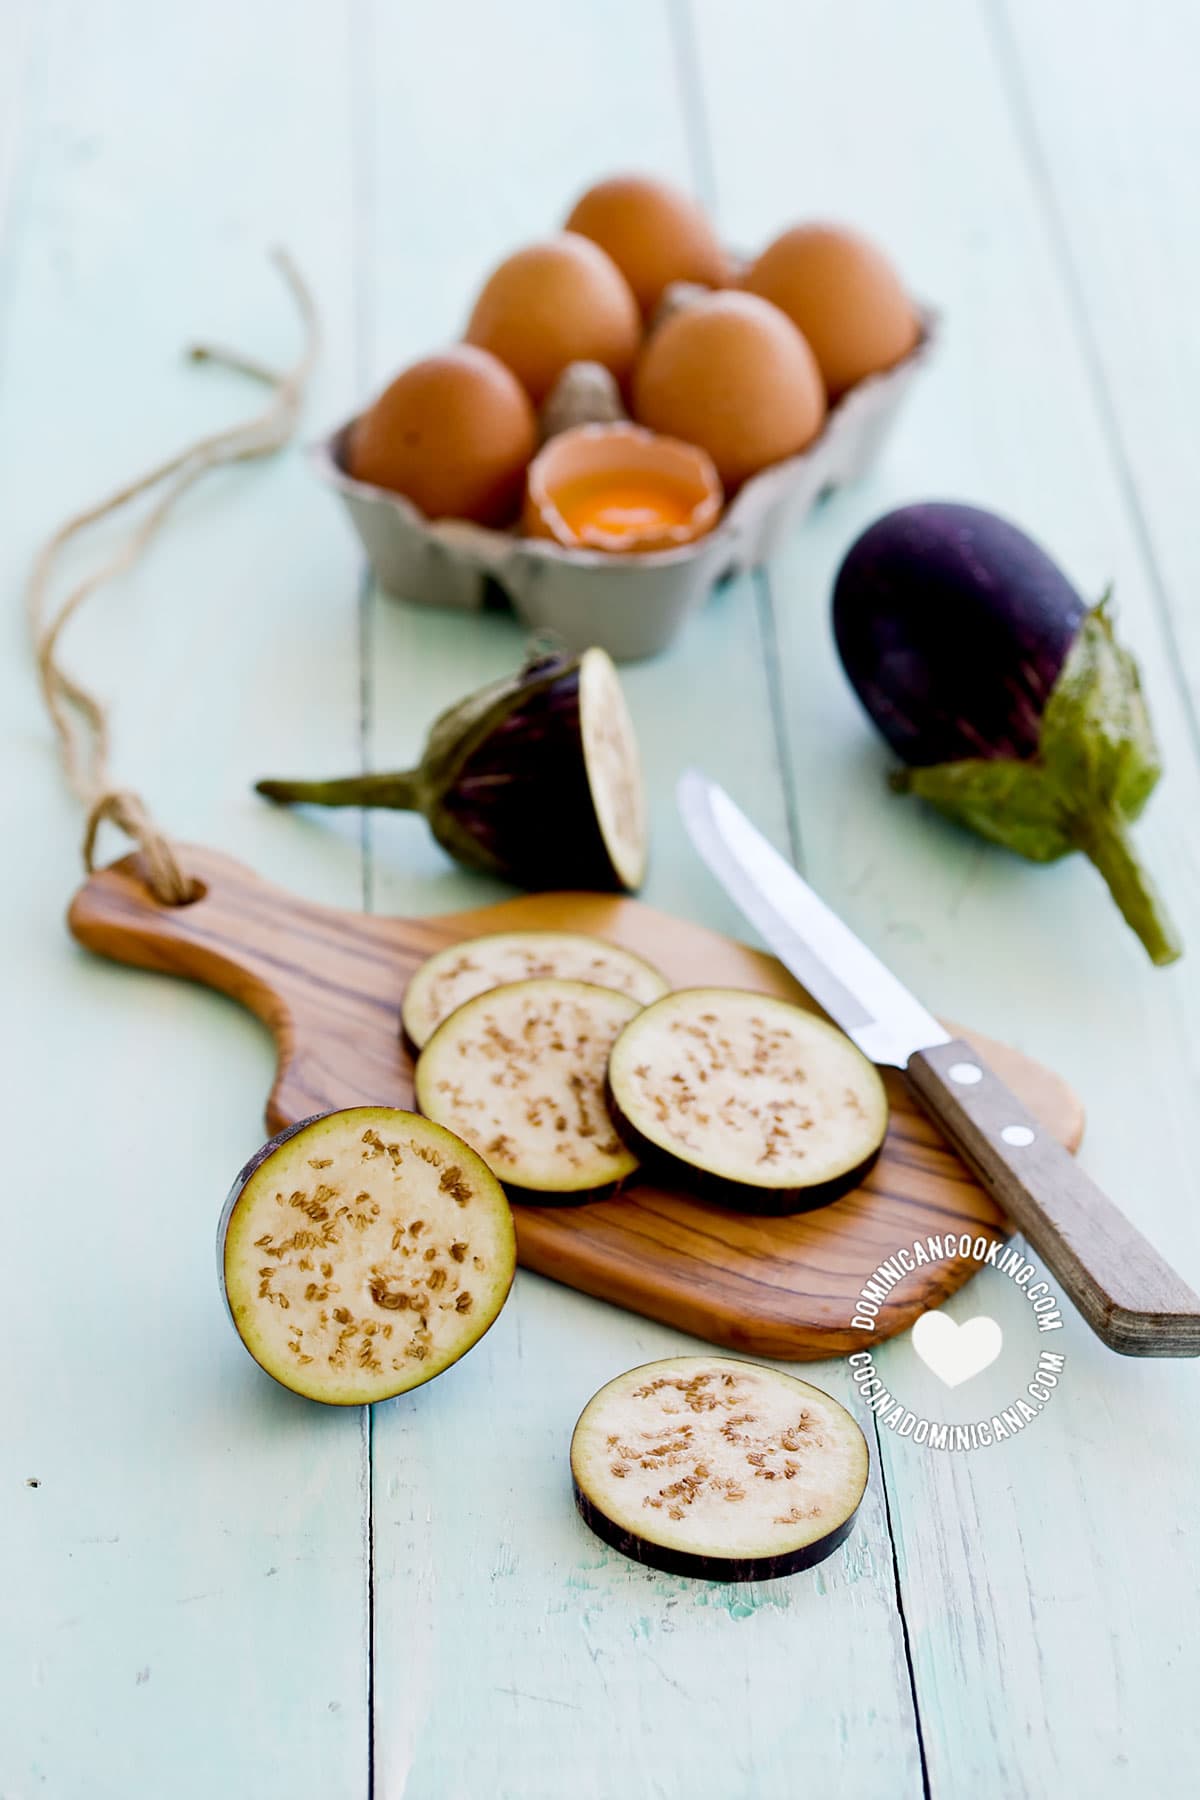 Ingredients for torrejas de berenjenas (fried eggplants).